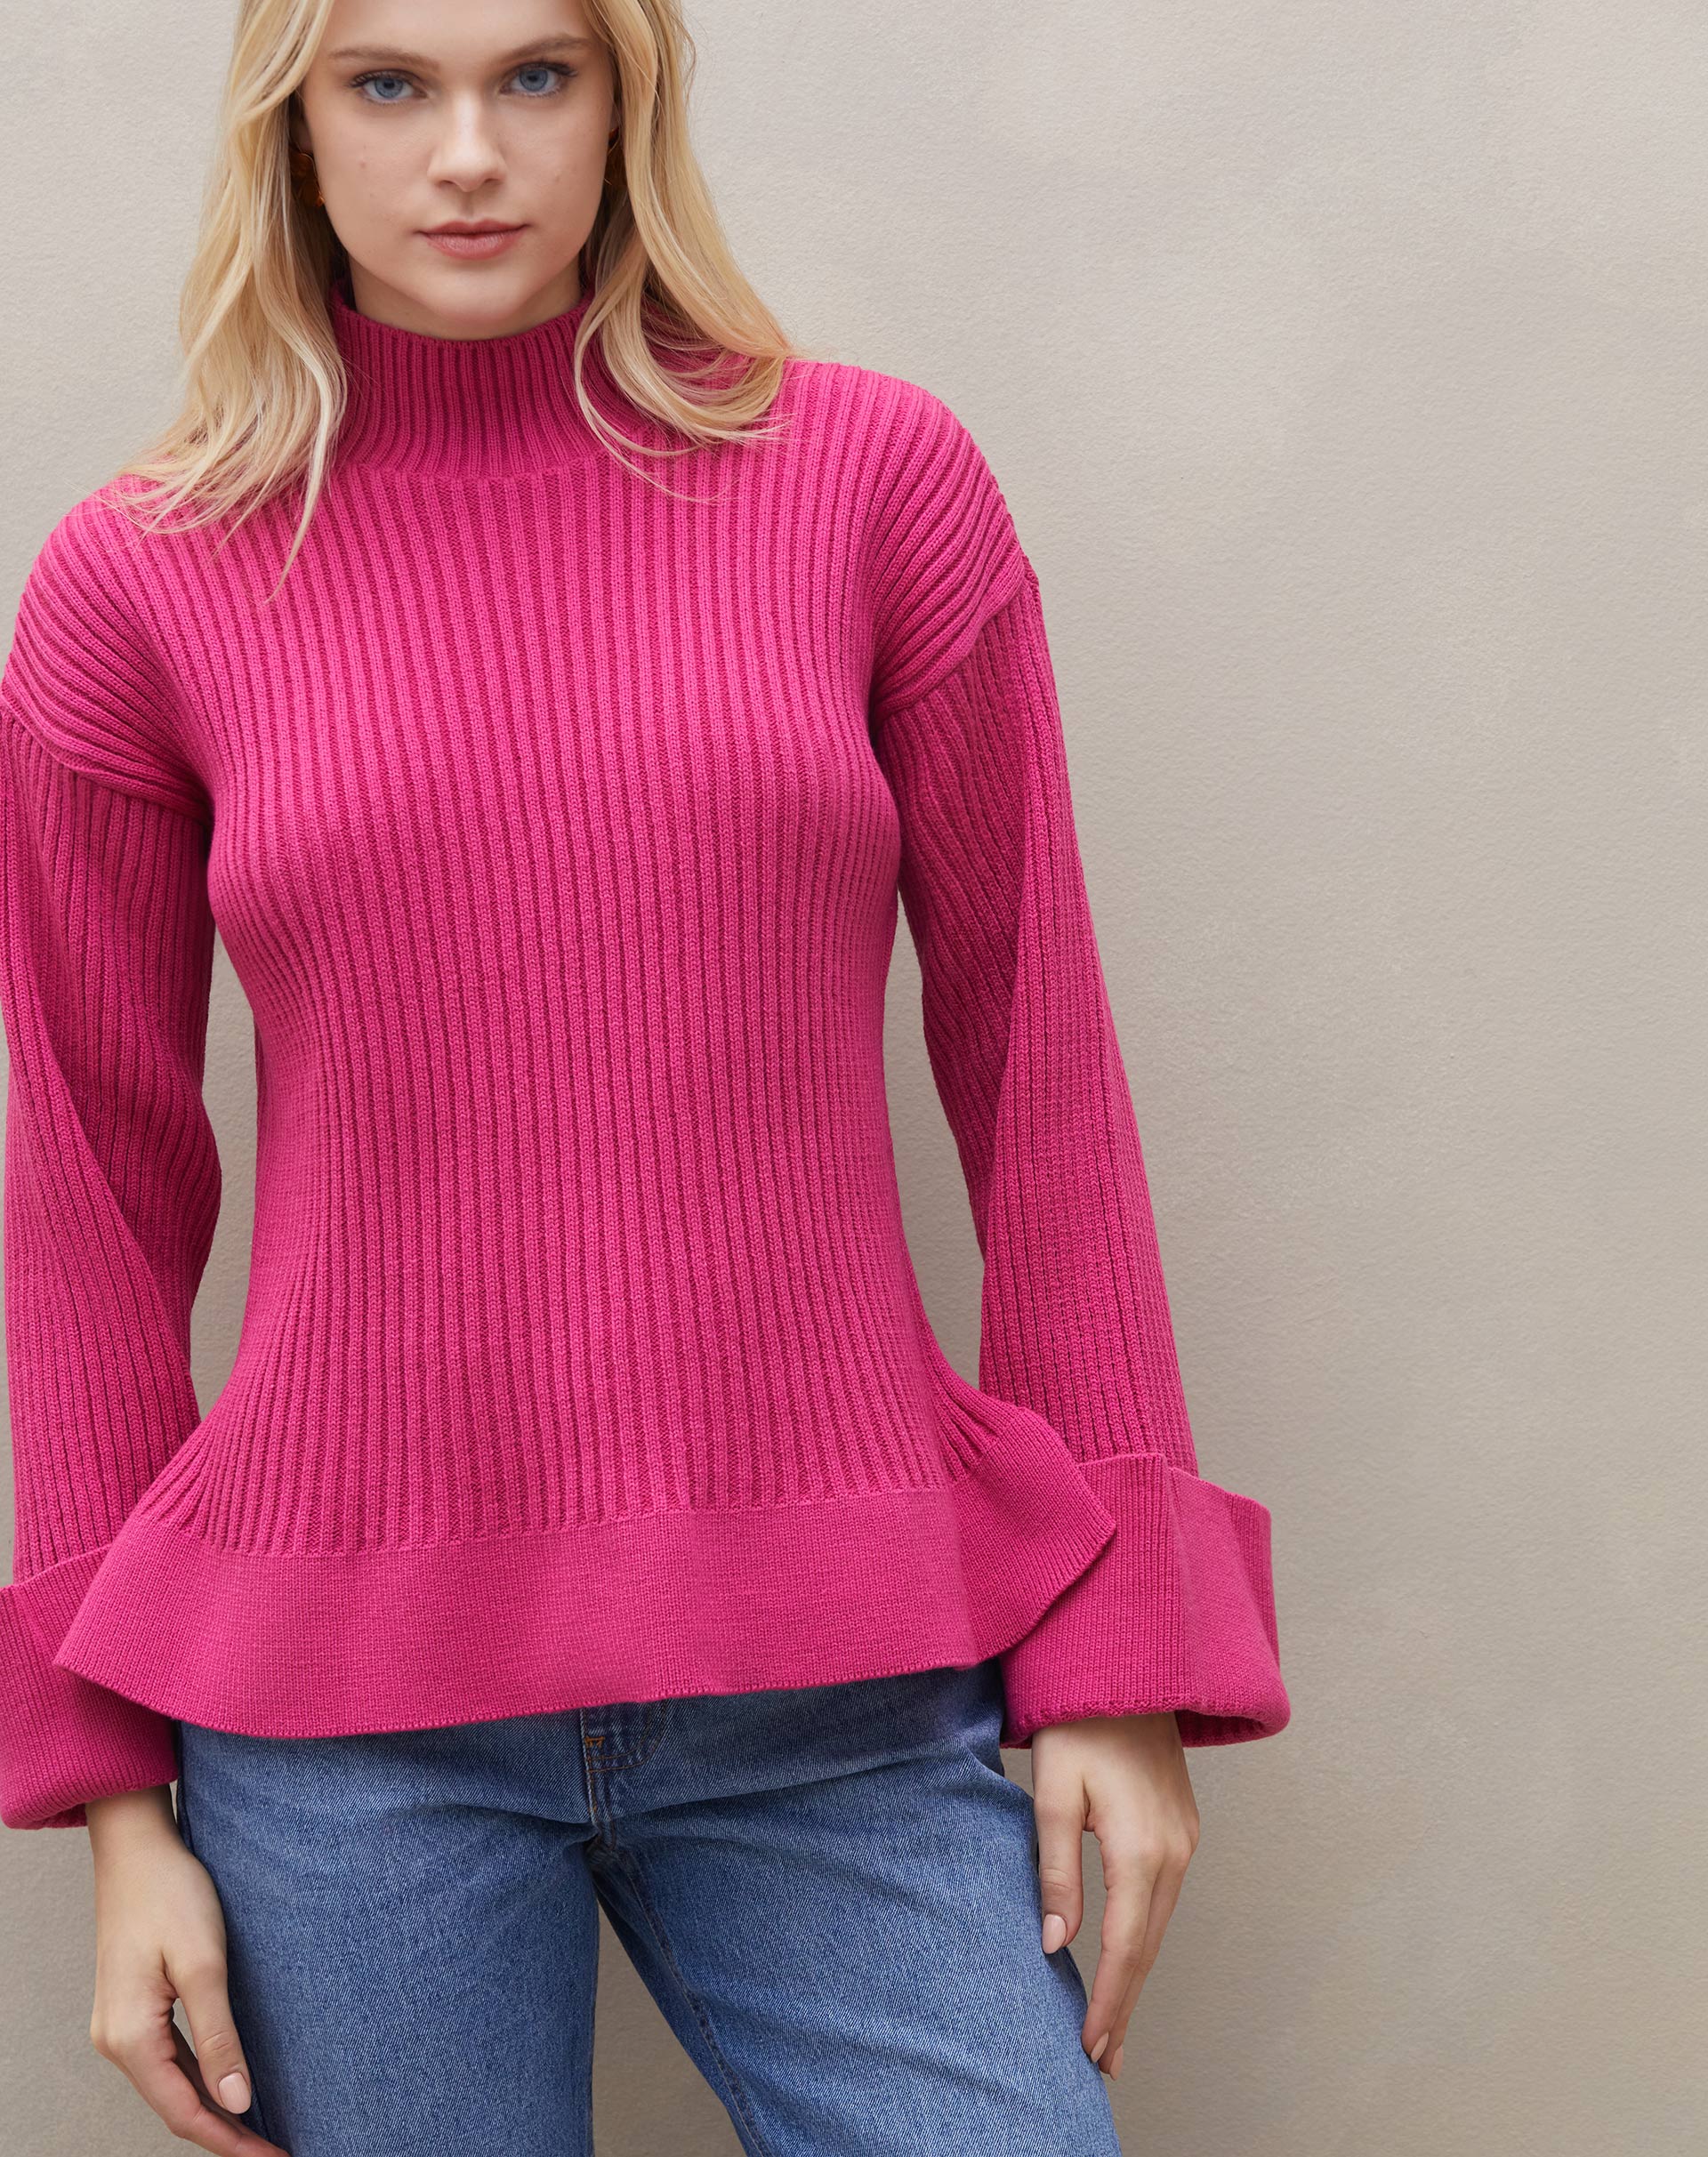 Suéter de Tricot Canelado com Punho Virado - Rosa Escuro